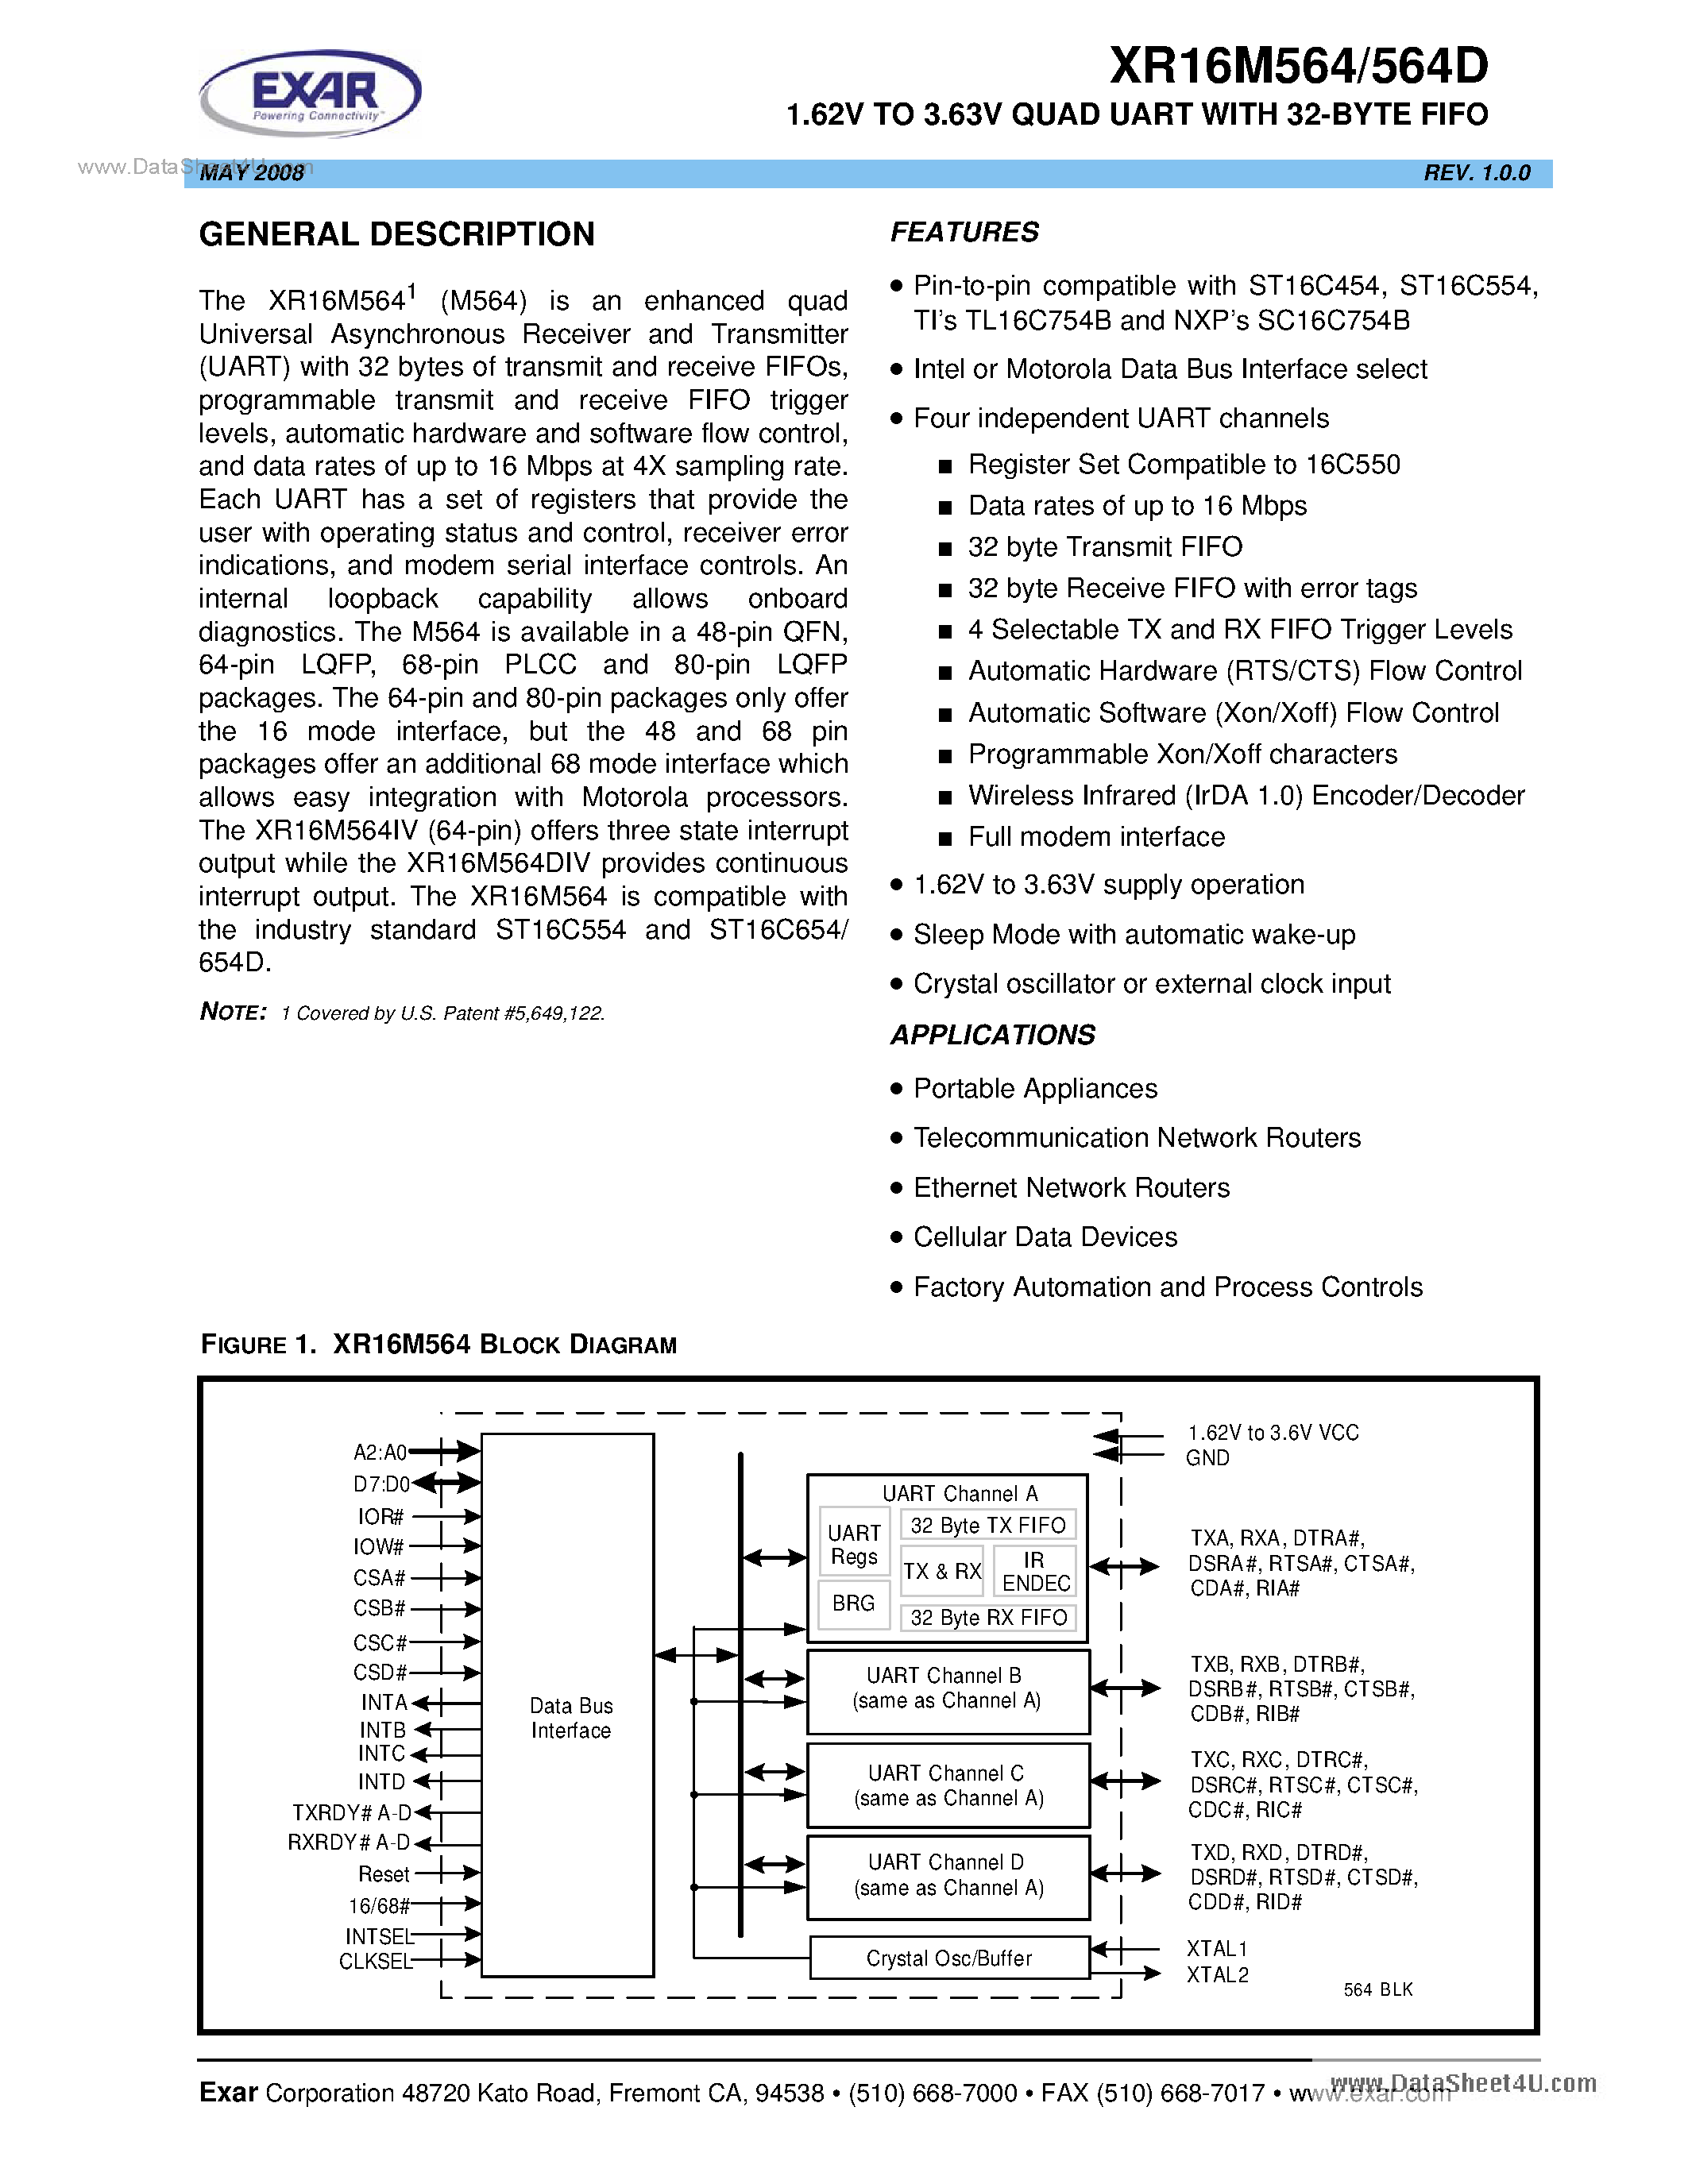 Даташит XR16M564 - 1.62V TO 3.63V Quad UART страница 1